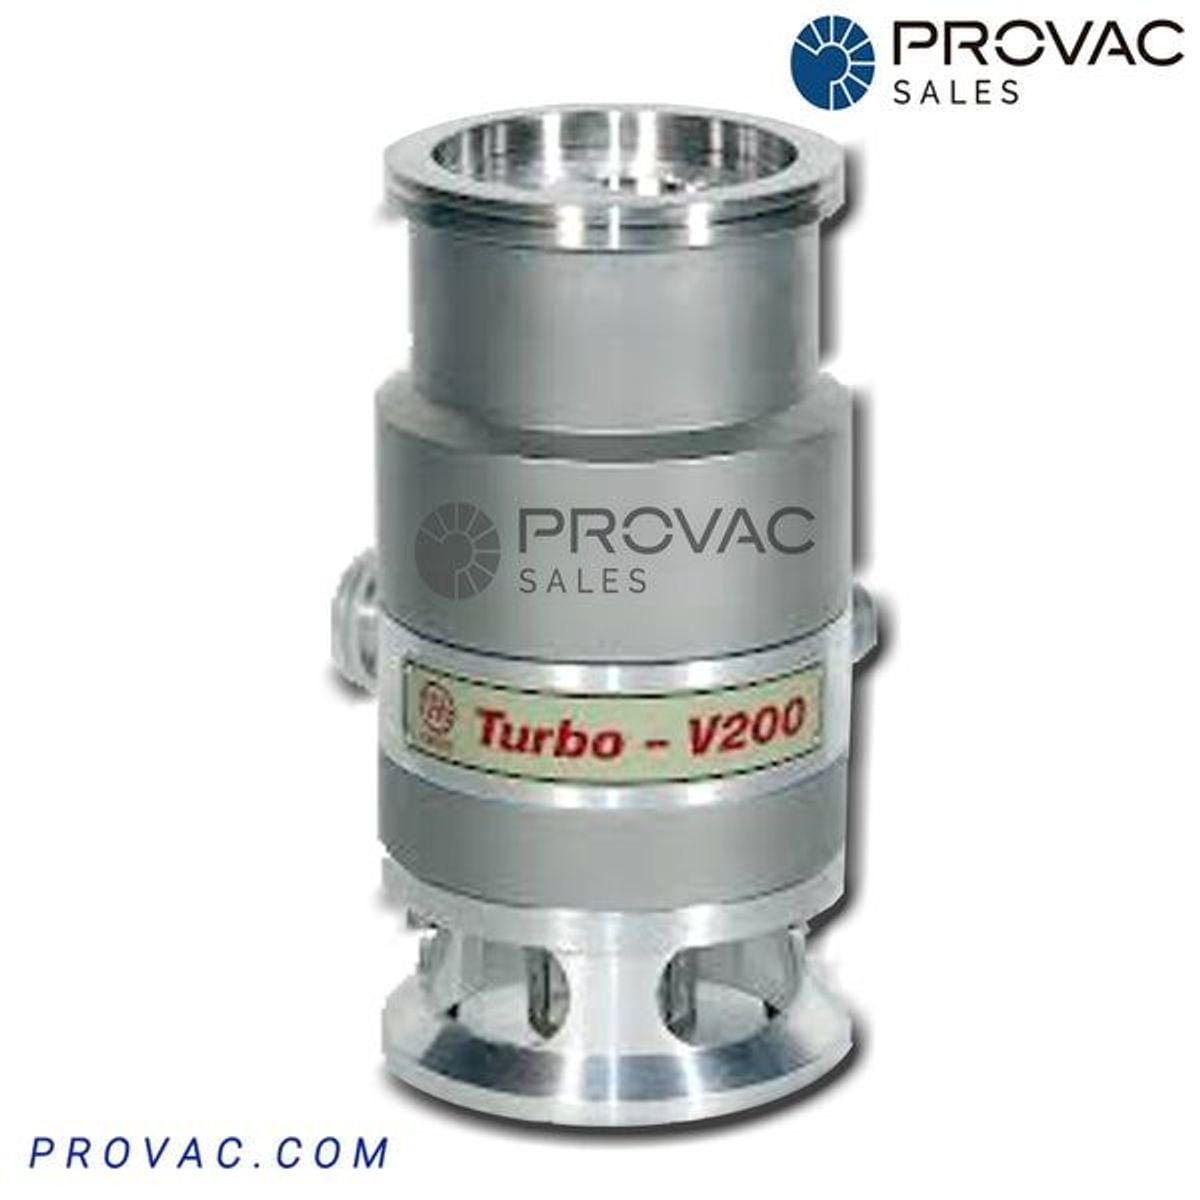 Varian TV-200 Turbo Pump, Rebuilt Image 1